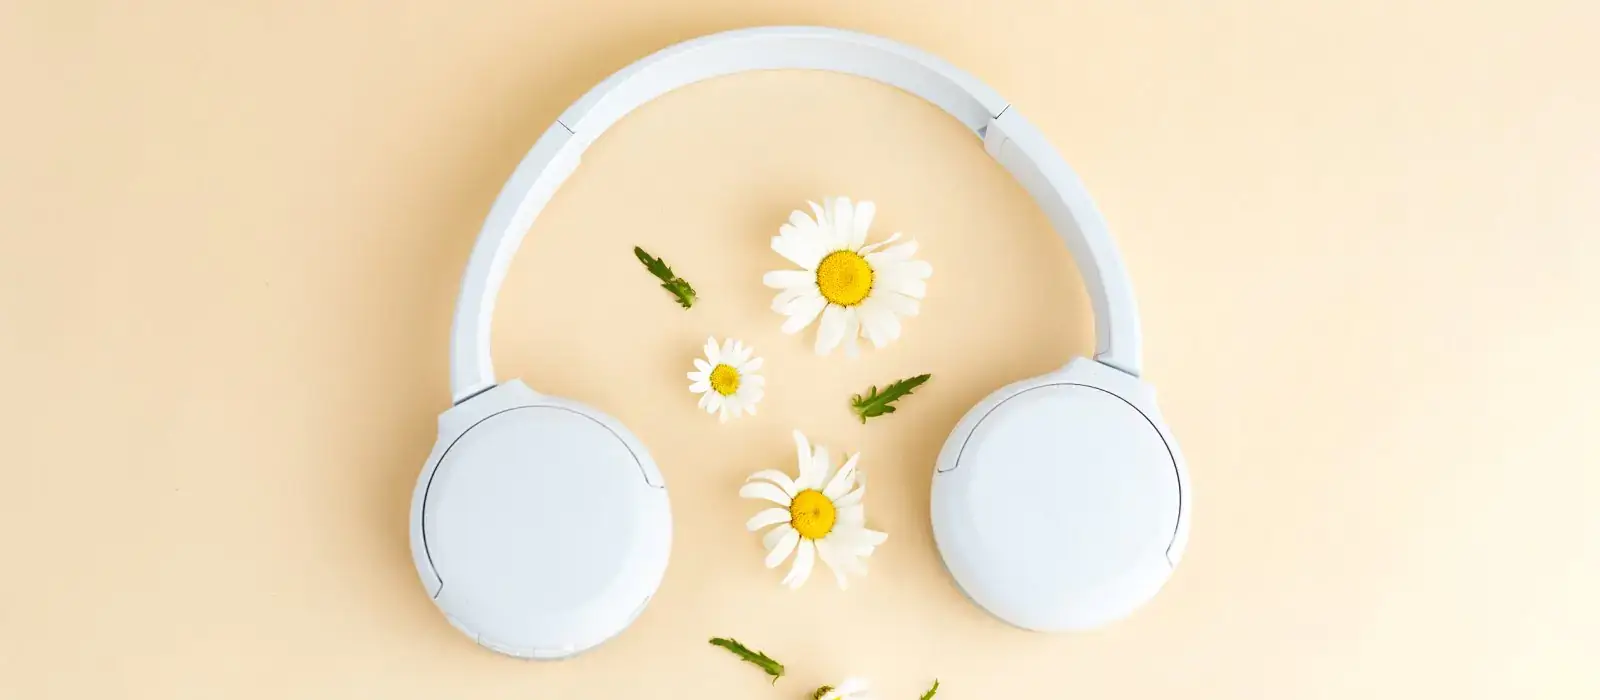 Jarní poslech audiotéky - sluchátka a jarní květy